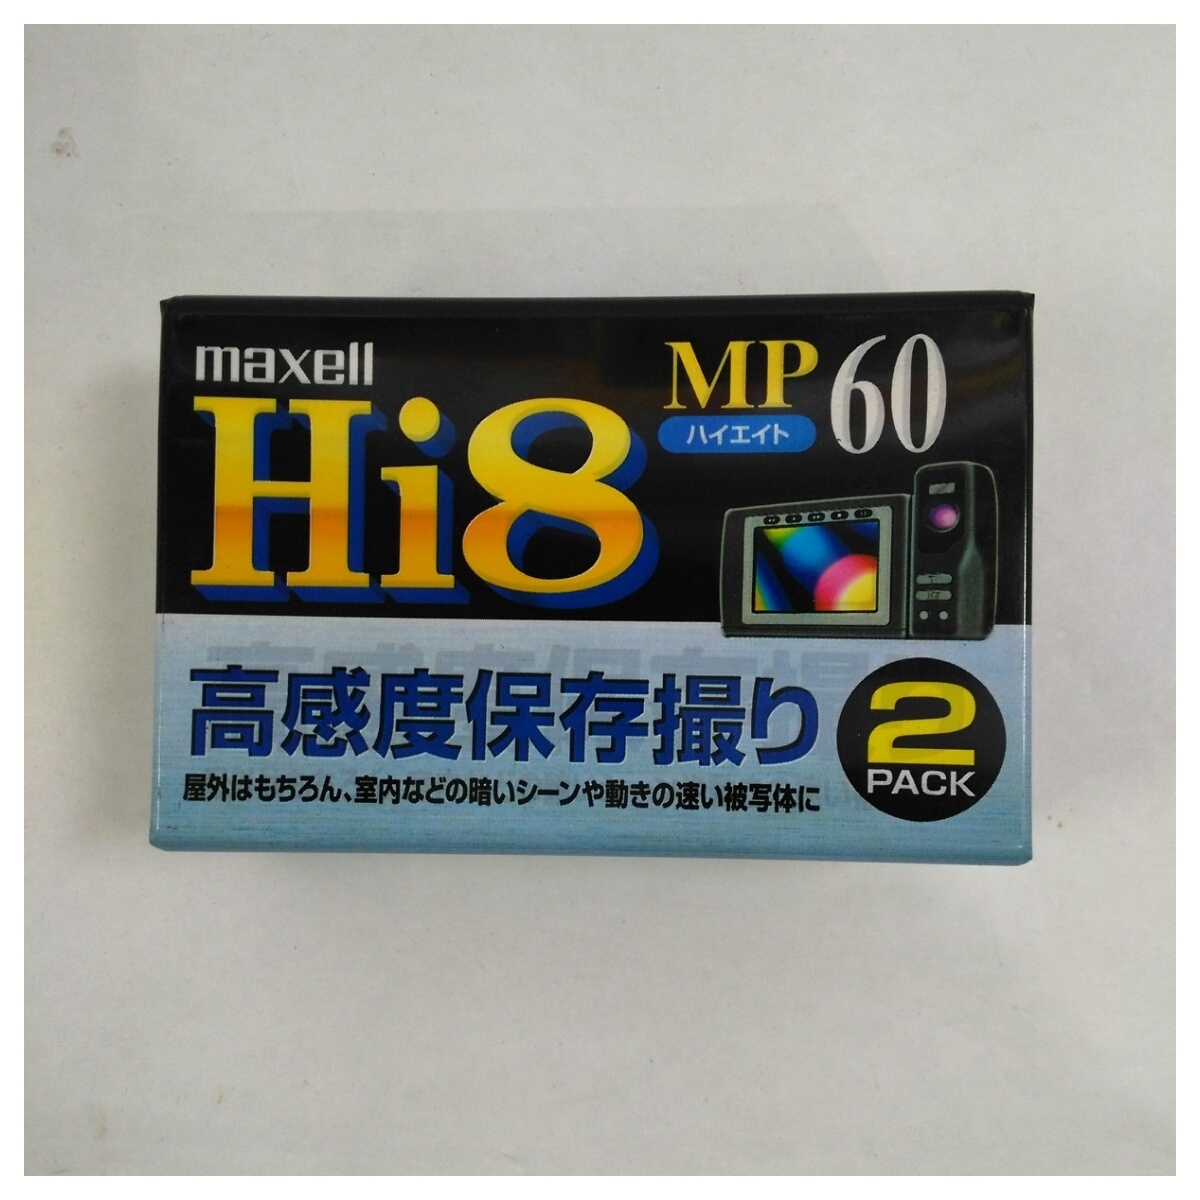 [ не использовался товар ]mak cell высокое разрешение Hi8 60 минут лента 2 шт упаковка P6-60XRML2P×2 упаковка комплект 